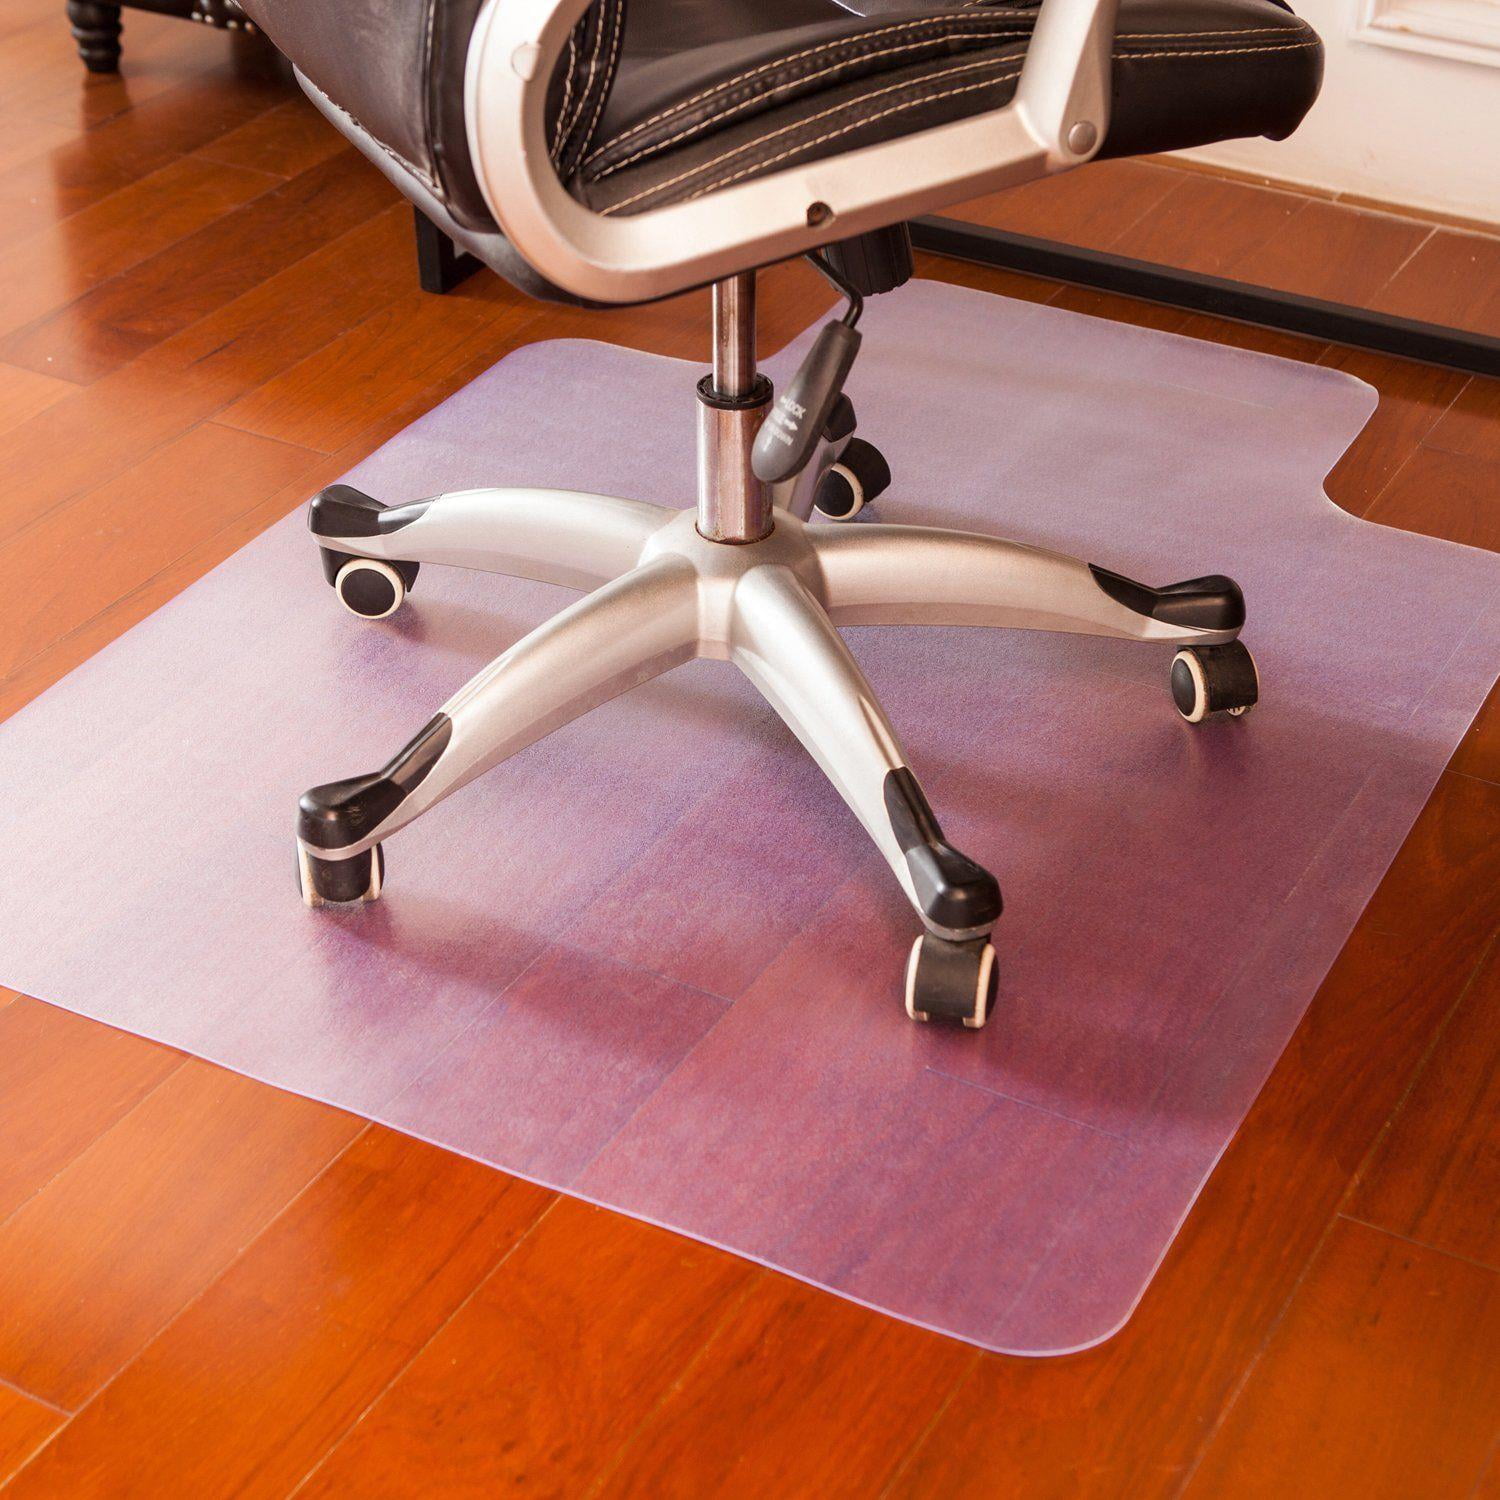 Ktaxon Office Chair Mat For Hardwood, Best Non Slip Yoga Mat For Hardwood Floors